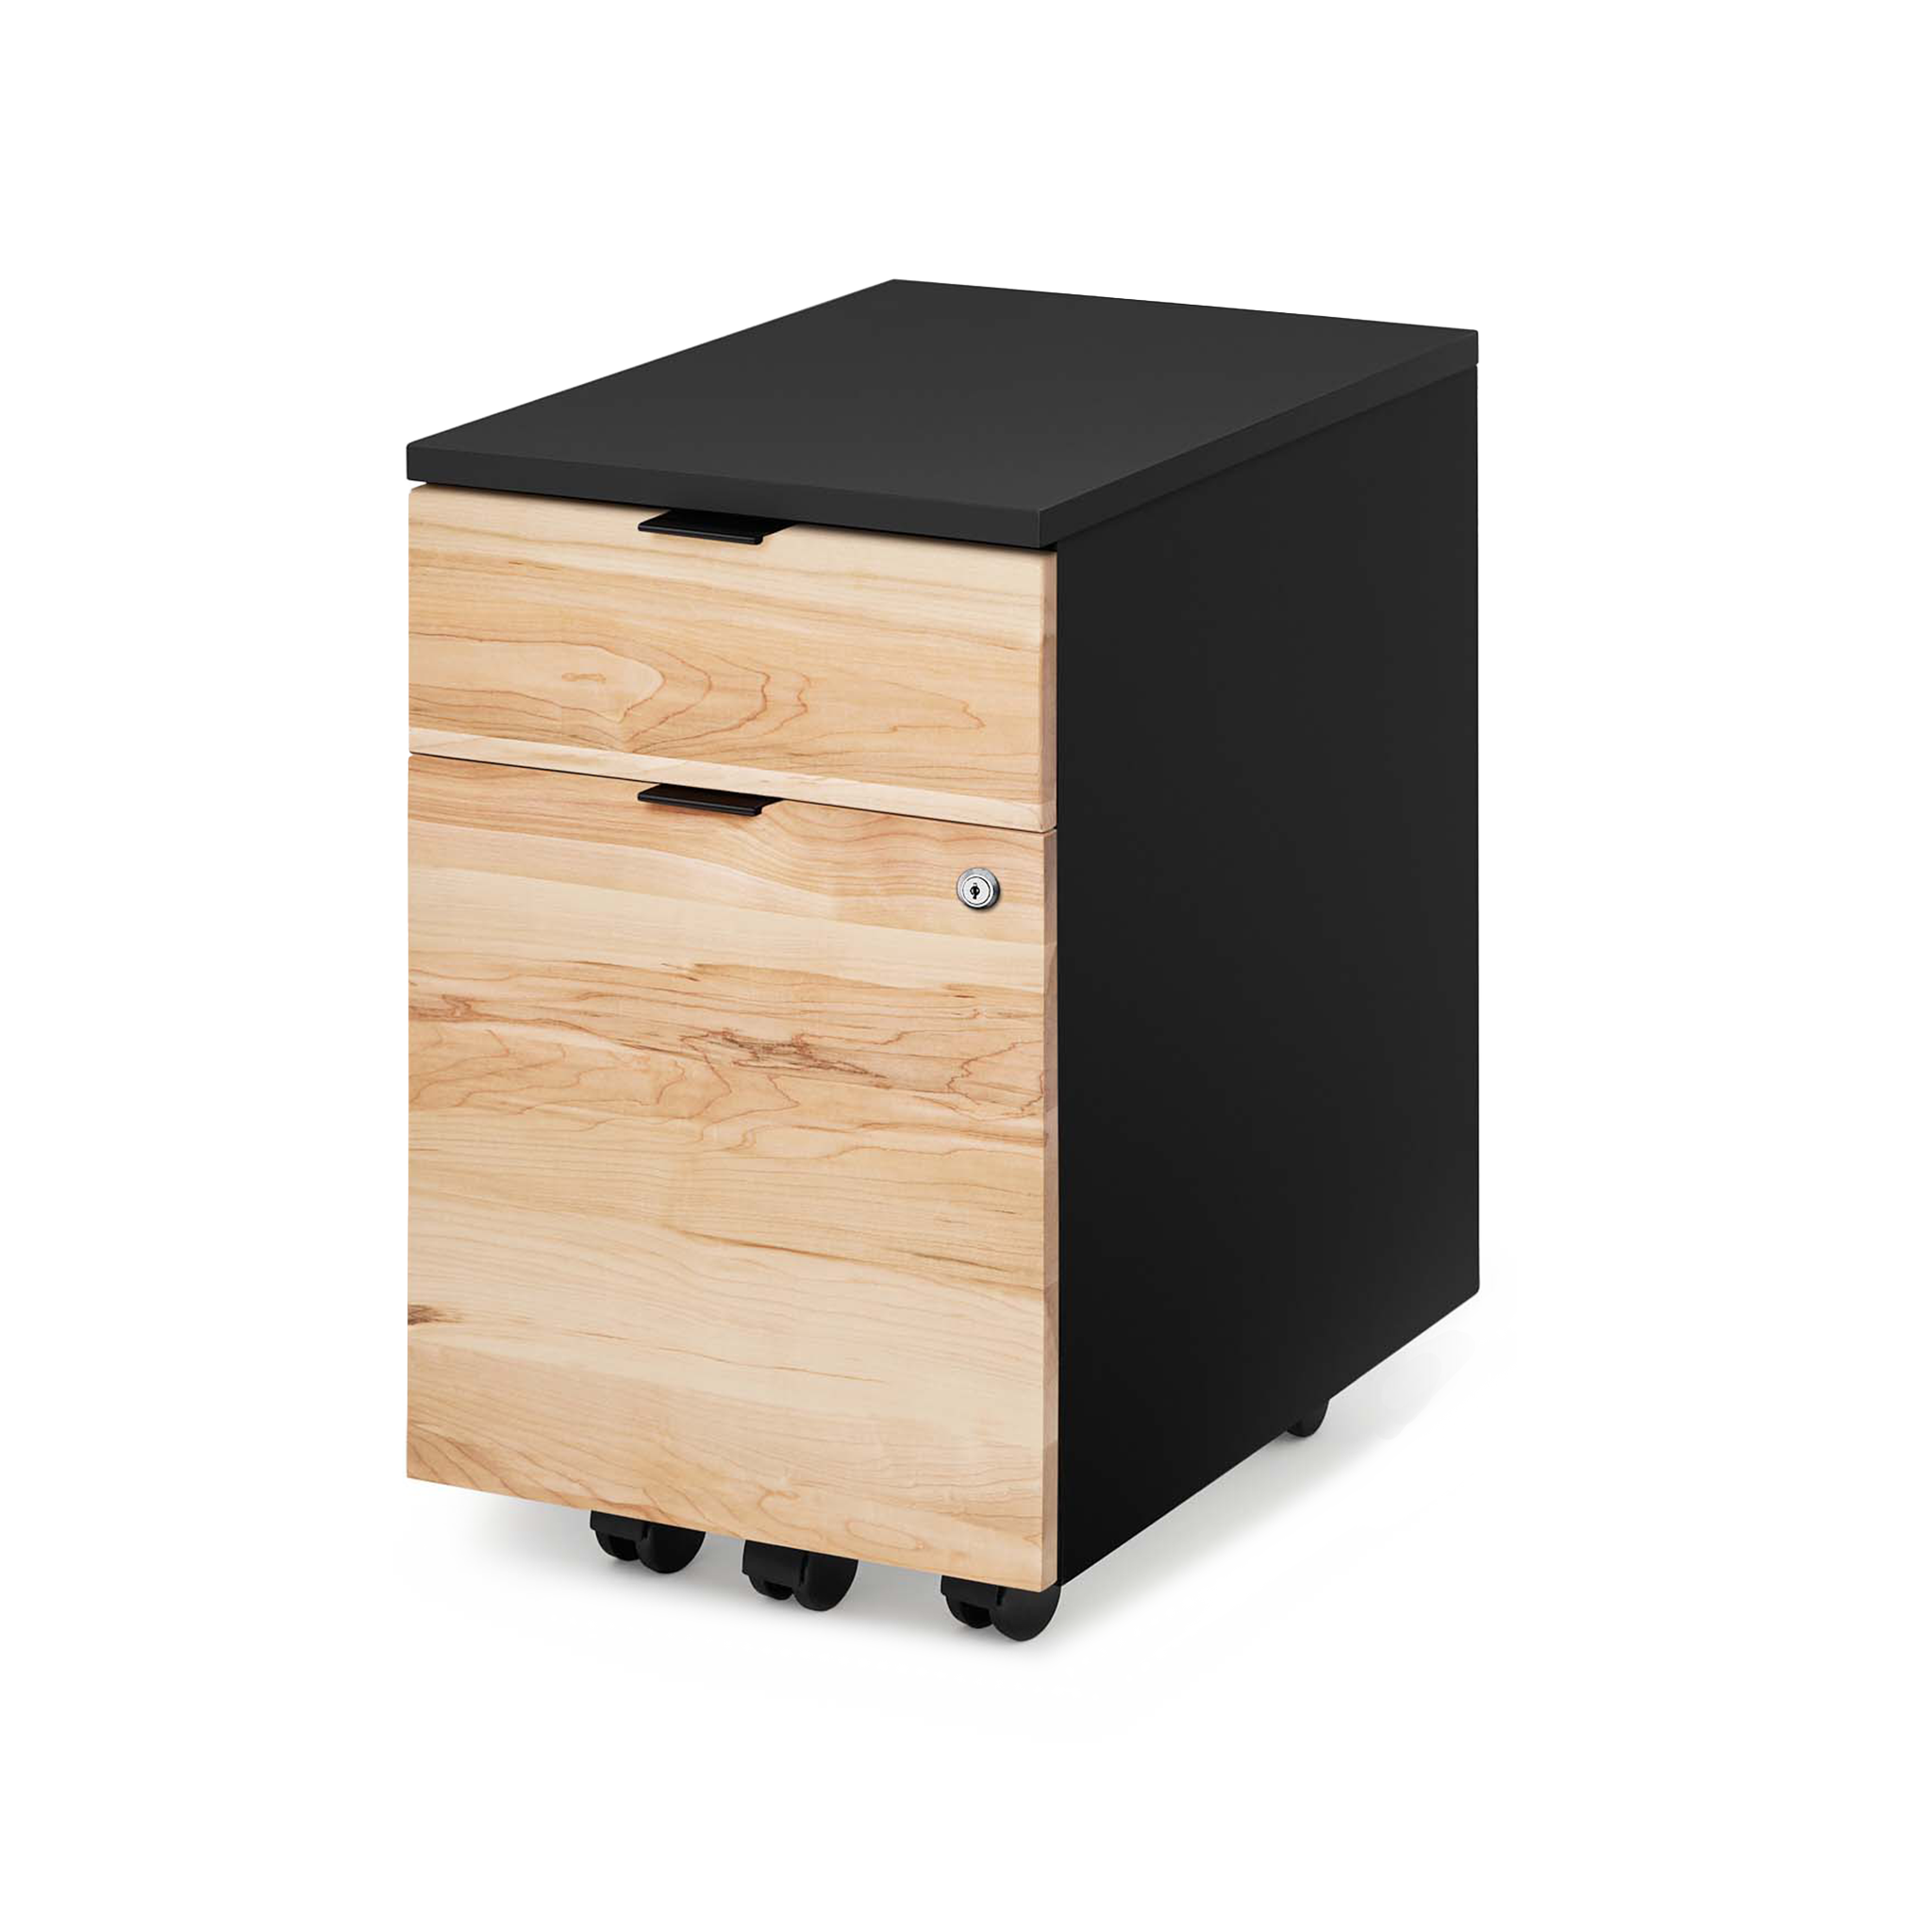 Neat Filing Cabinet - Black/Maple - Noir/Érable